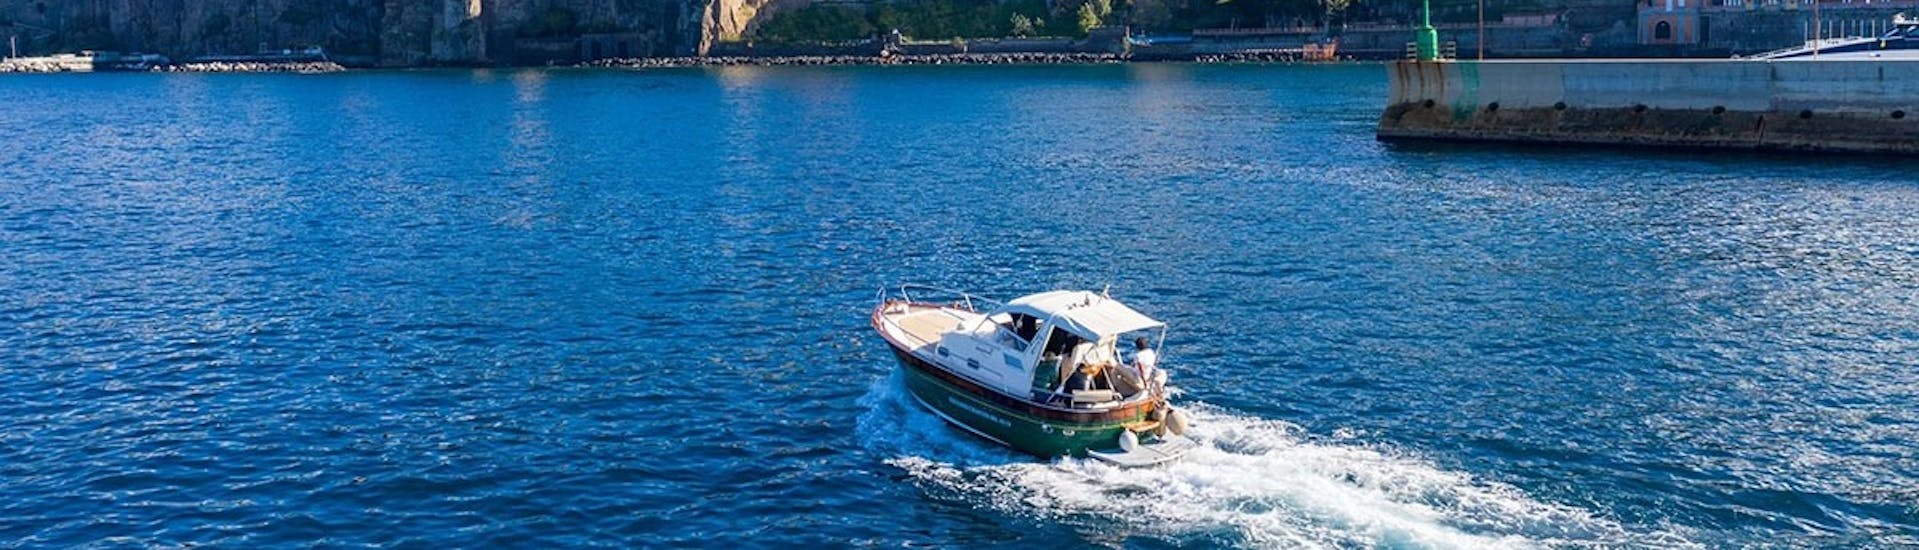 Giuliani Charter Sorrento's boot in open water tijdens de boottocht rond de kust van Sorrento met Limoncello proeverij.